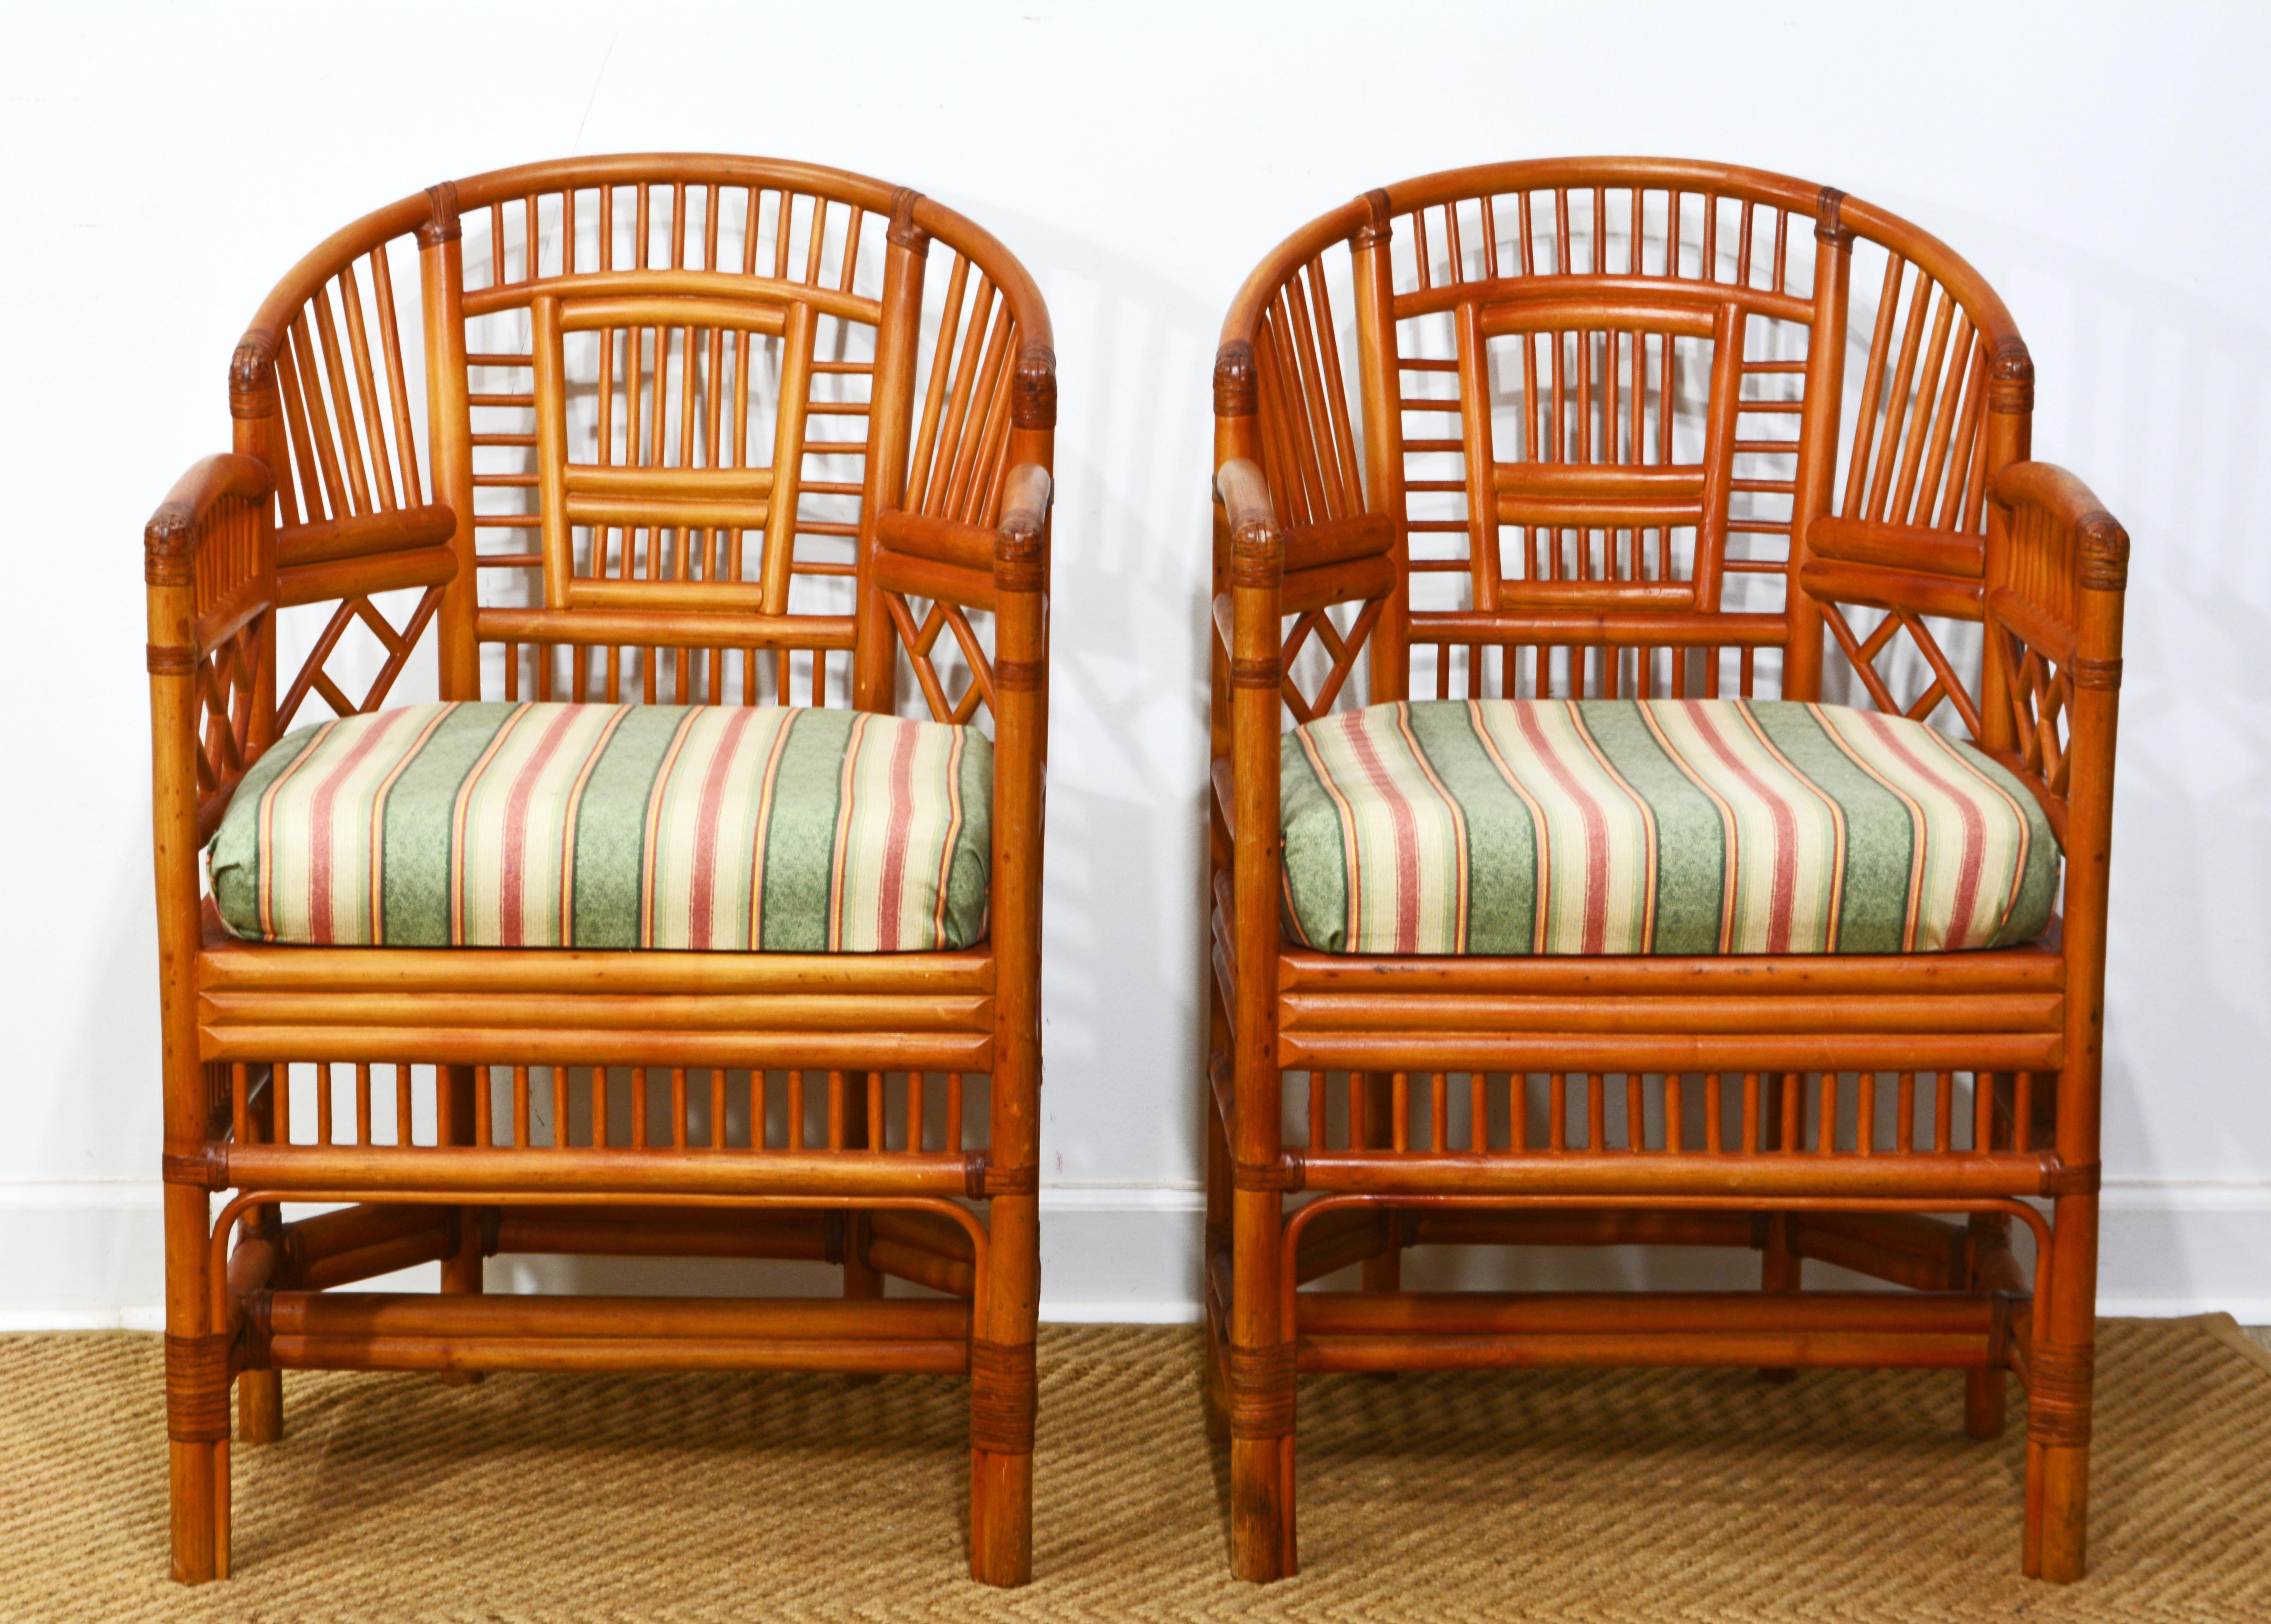 Dieses Paar Chinoiserie-Chippendale-Stühle mit Hufeisenlehne aus Rattan und Schilfrohr, oft auch Brighton Pavillion genannt, hat Kultcharakter. Das Modell ist in verschiedenen Designs und Materialien erhältlich. Diese Stühle sind sehr gut